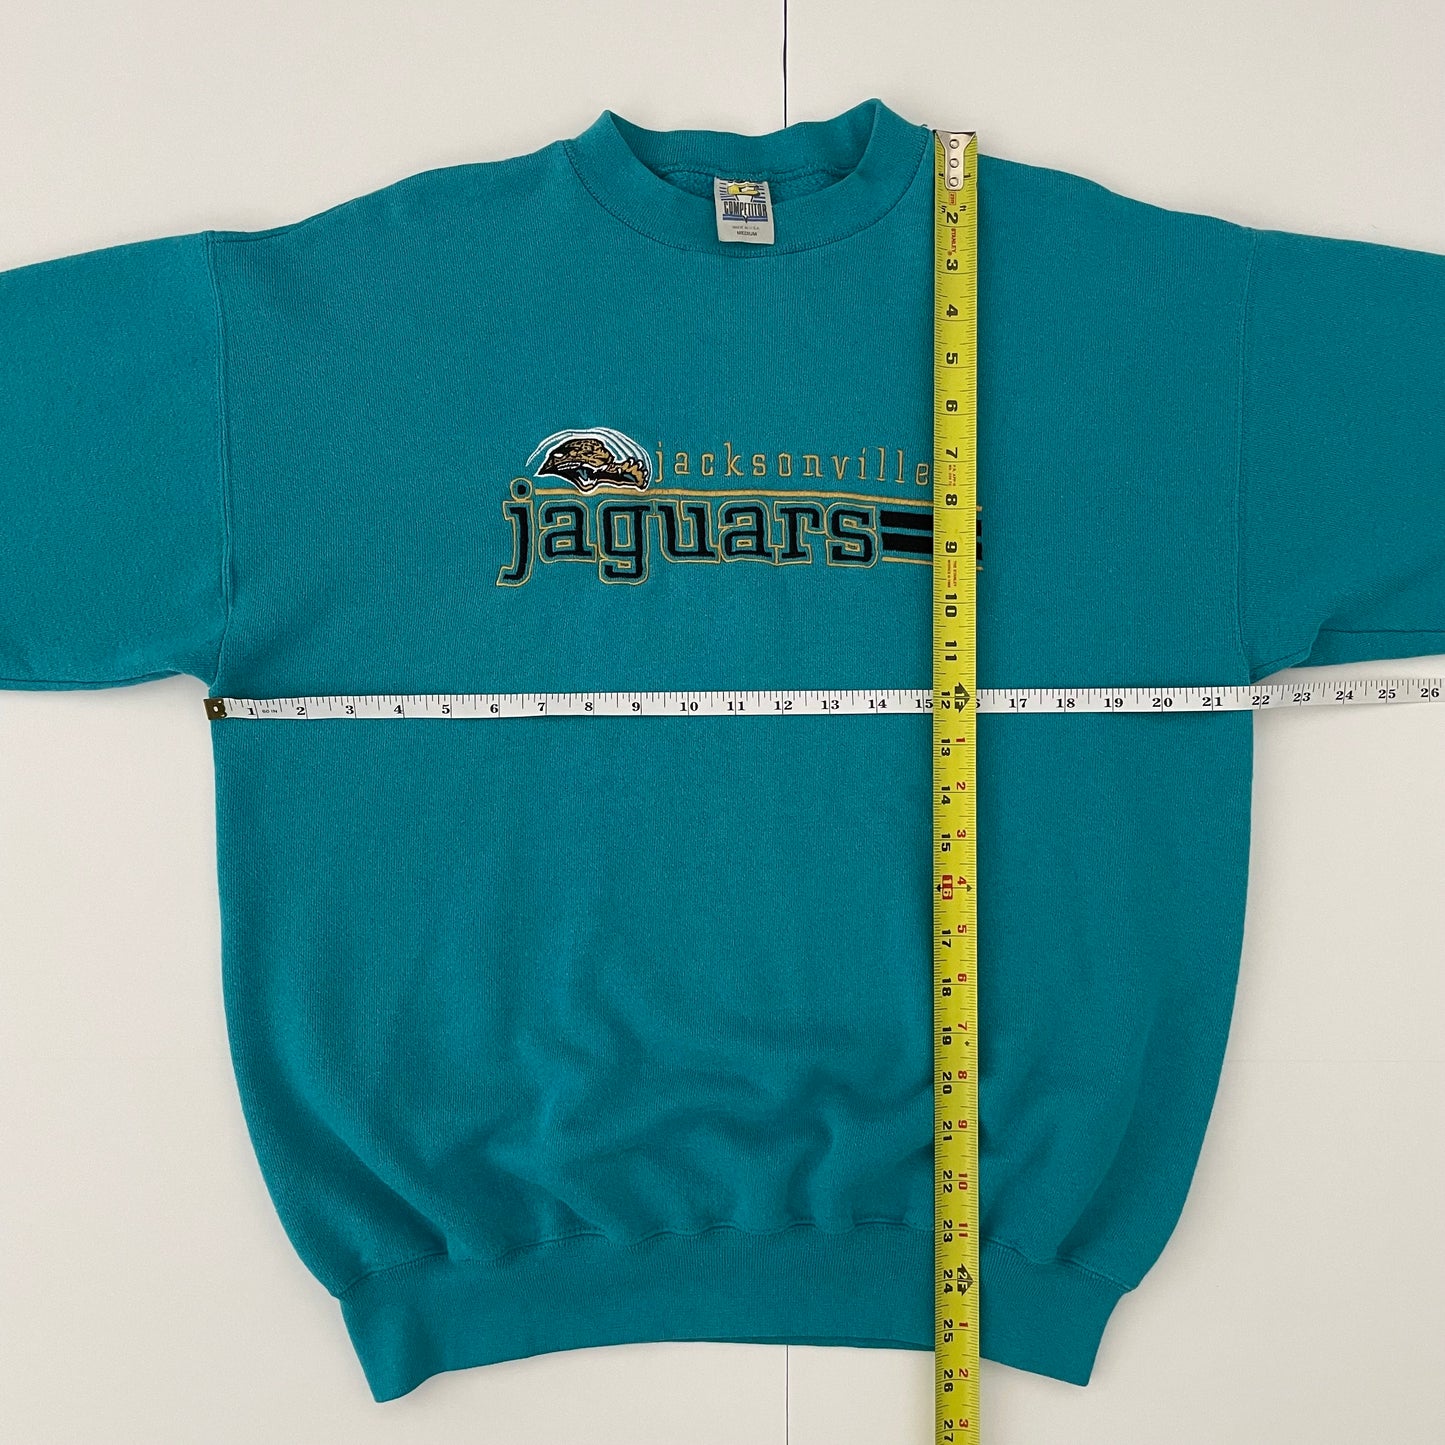 Vintage Jacksonville Jaguars embroidered sweatshirt size MEDIUM